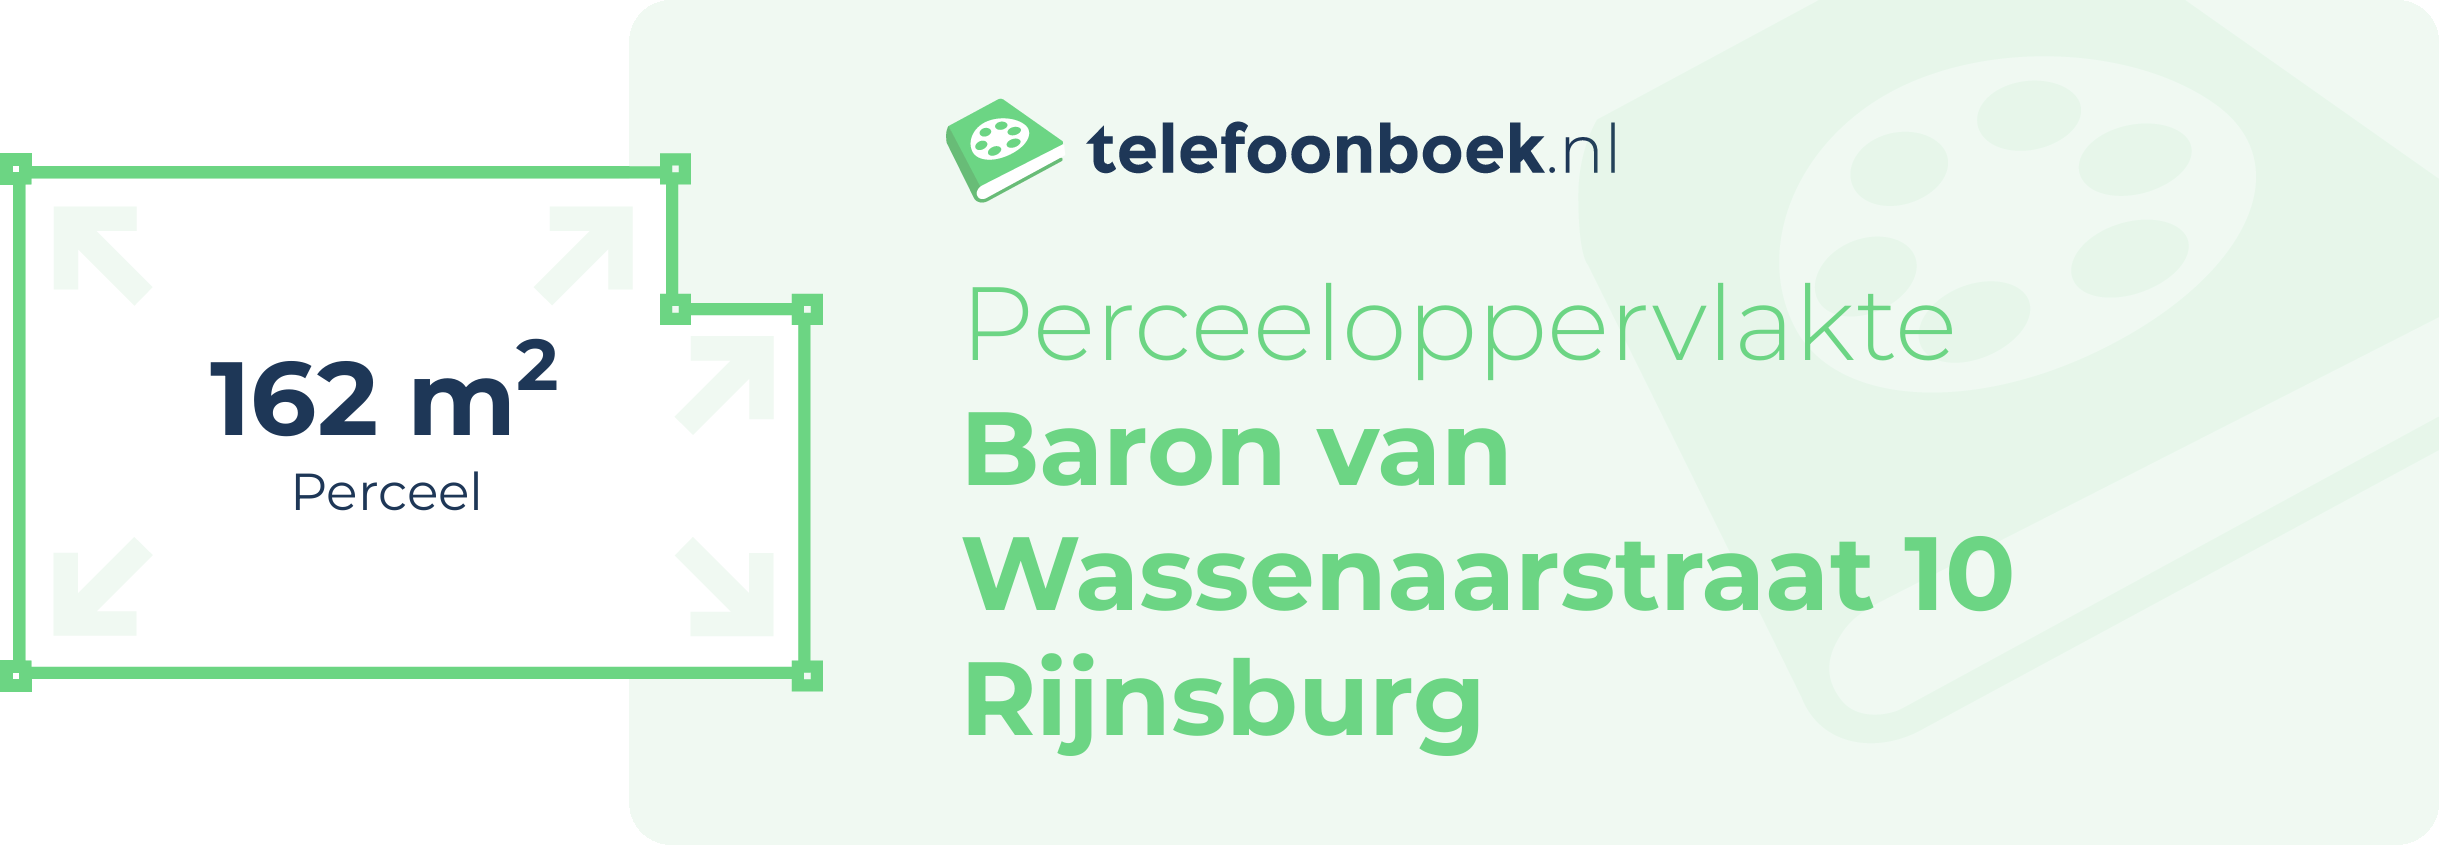 Perceeloppervlakte Baron Van Wassenaarstraat 10 Rijnsburg